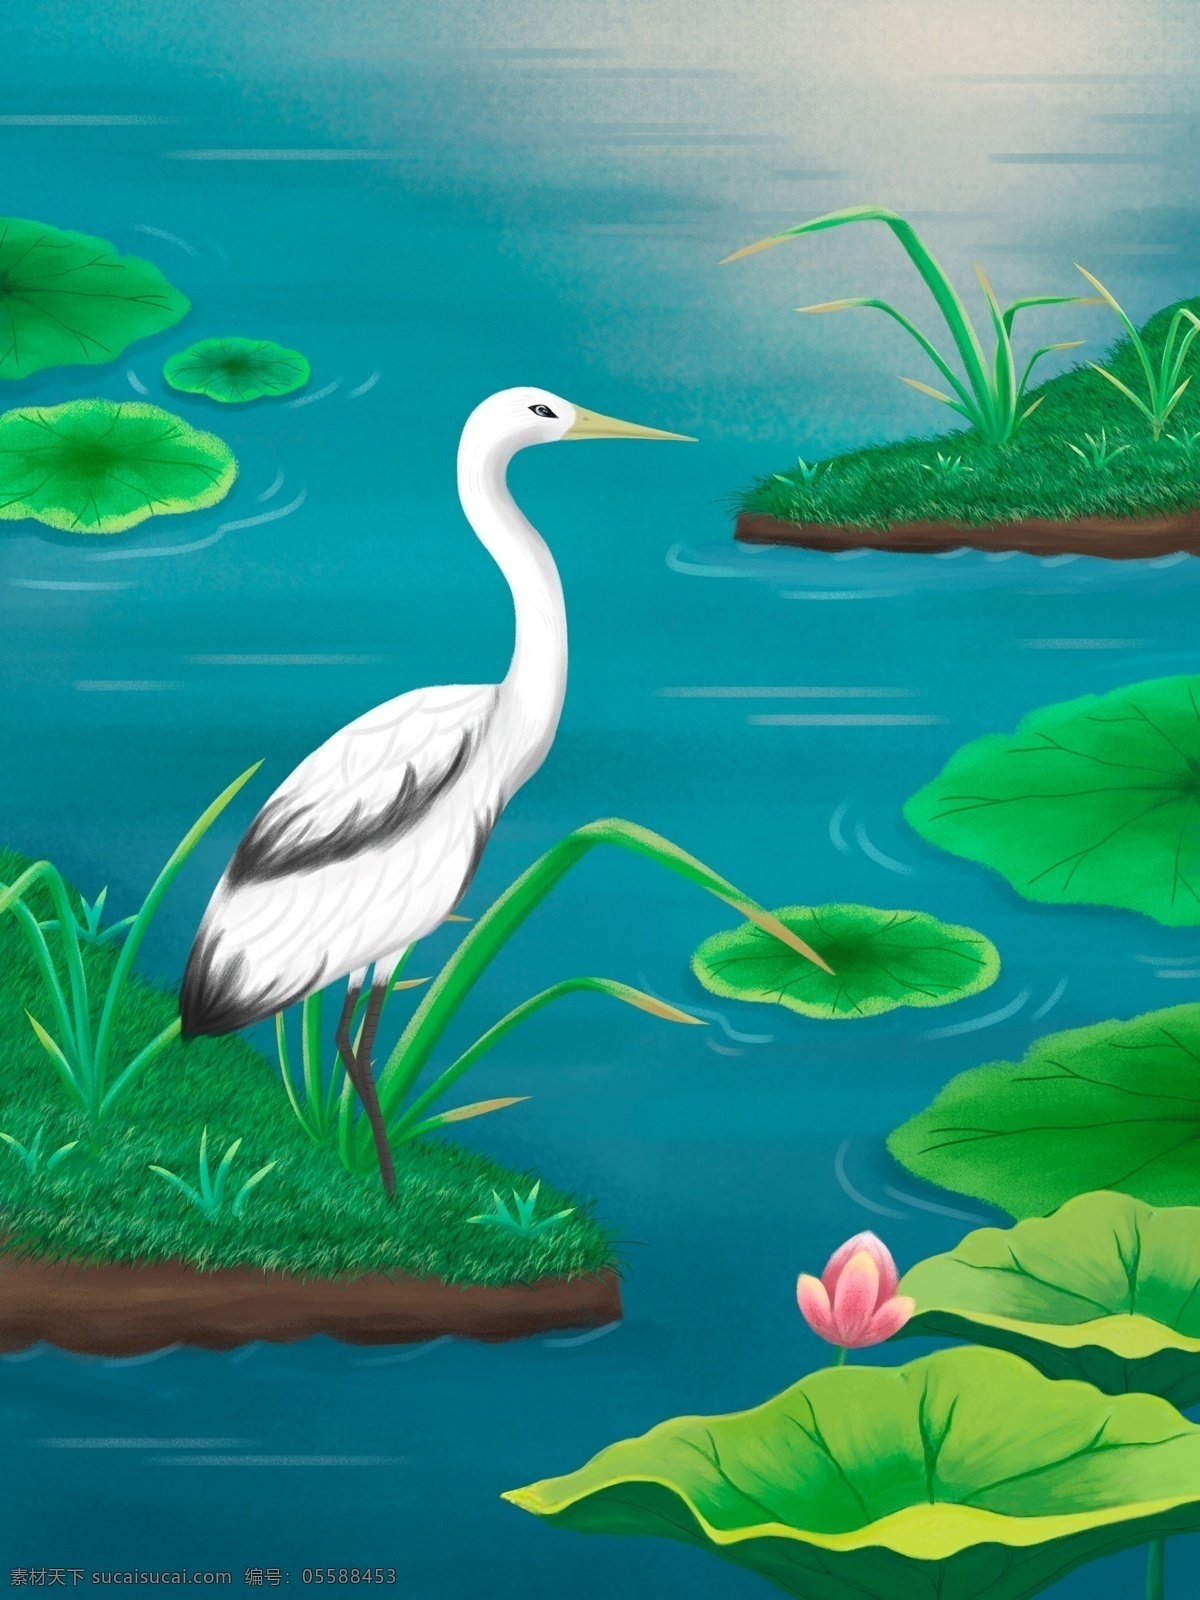 世界 湿地 日 保护 鸟类 植物 手绘 插画 荷叶 环保 大自然 世界湿地日 湿地日 湿地节 植被 湖泊 湖水 荷塘 池塘 水 环境